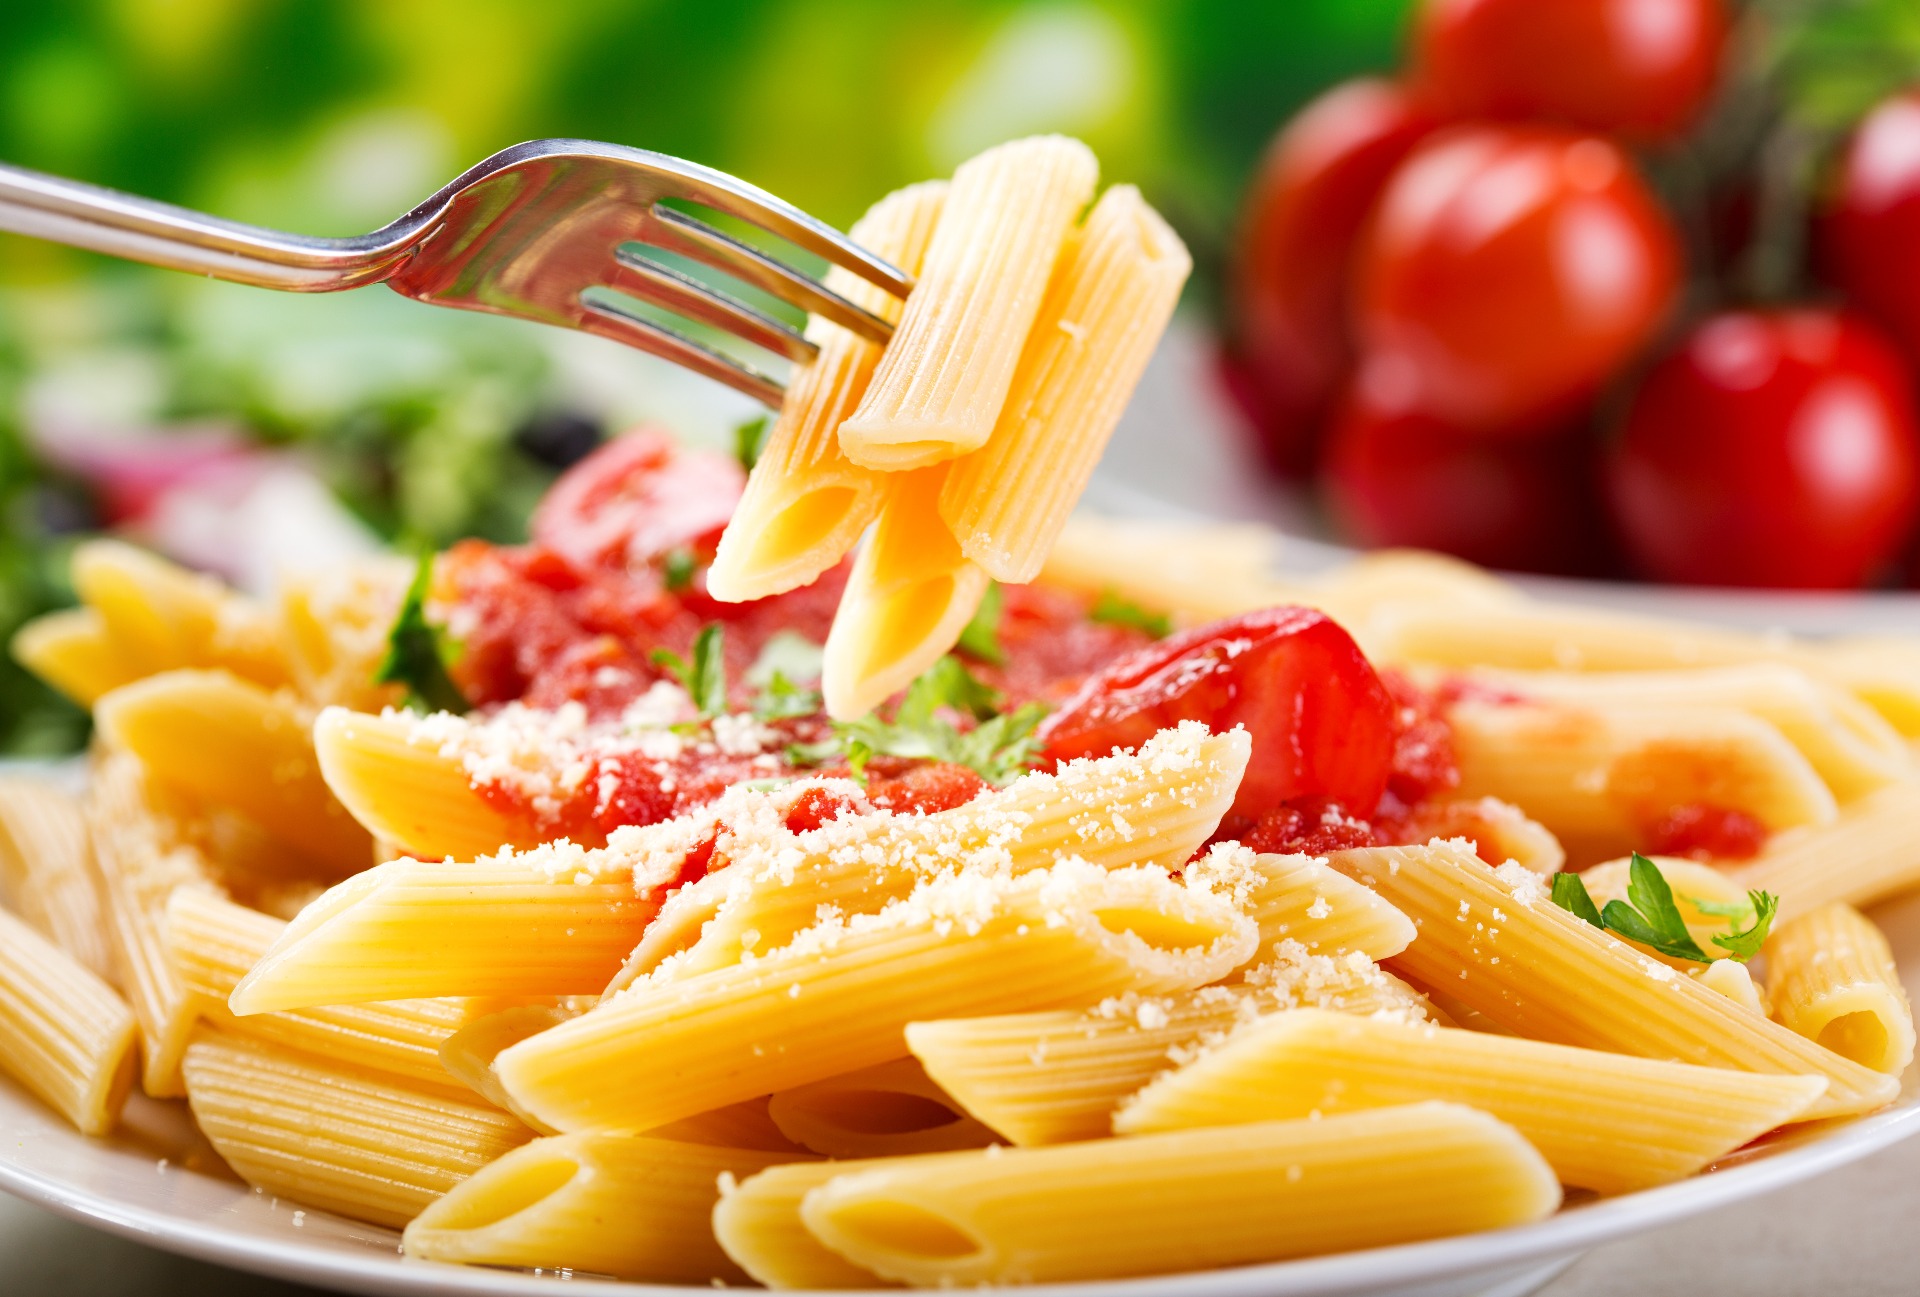  Vad är godare än en enkel pastarätt? Allt som behövs är pasta (gärna färsk), parmesanost, olivolja, krossade tomater, färska örter och vitlök. Men vet du hur du undviker att pastan blir "klistrig"? 